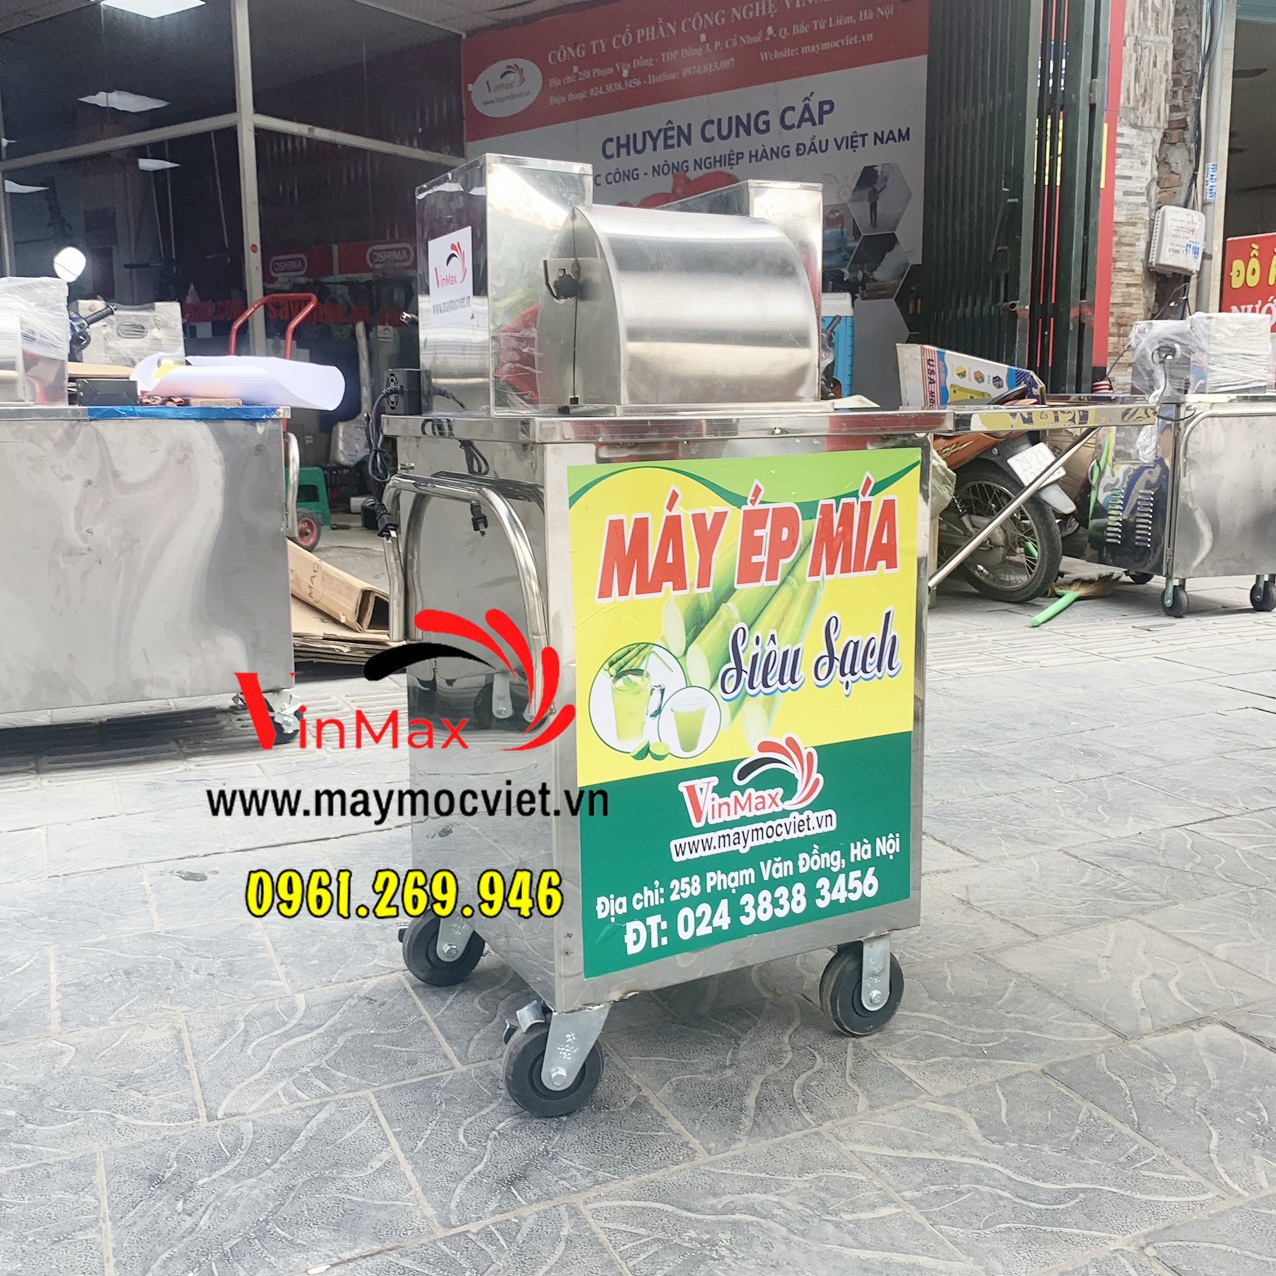 Máy ép nước mía siêu sạch chạy bằng acquy giá rẻ miễn phí giao Hà Nội